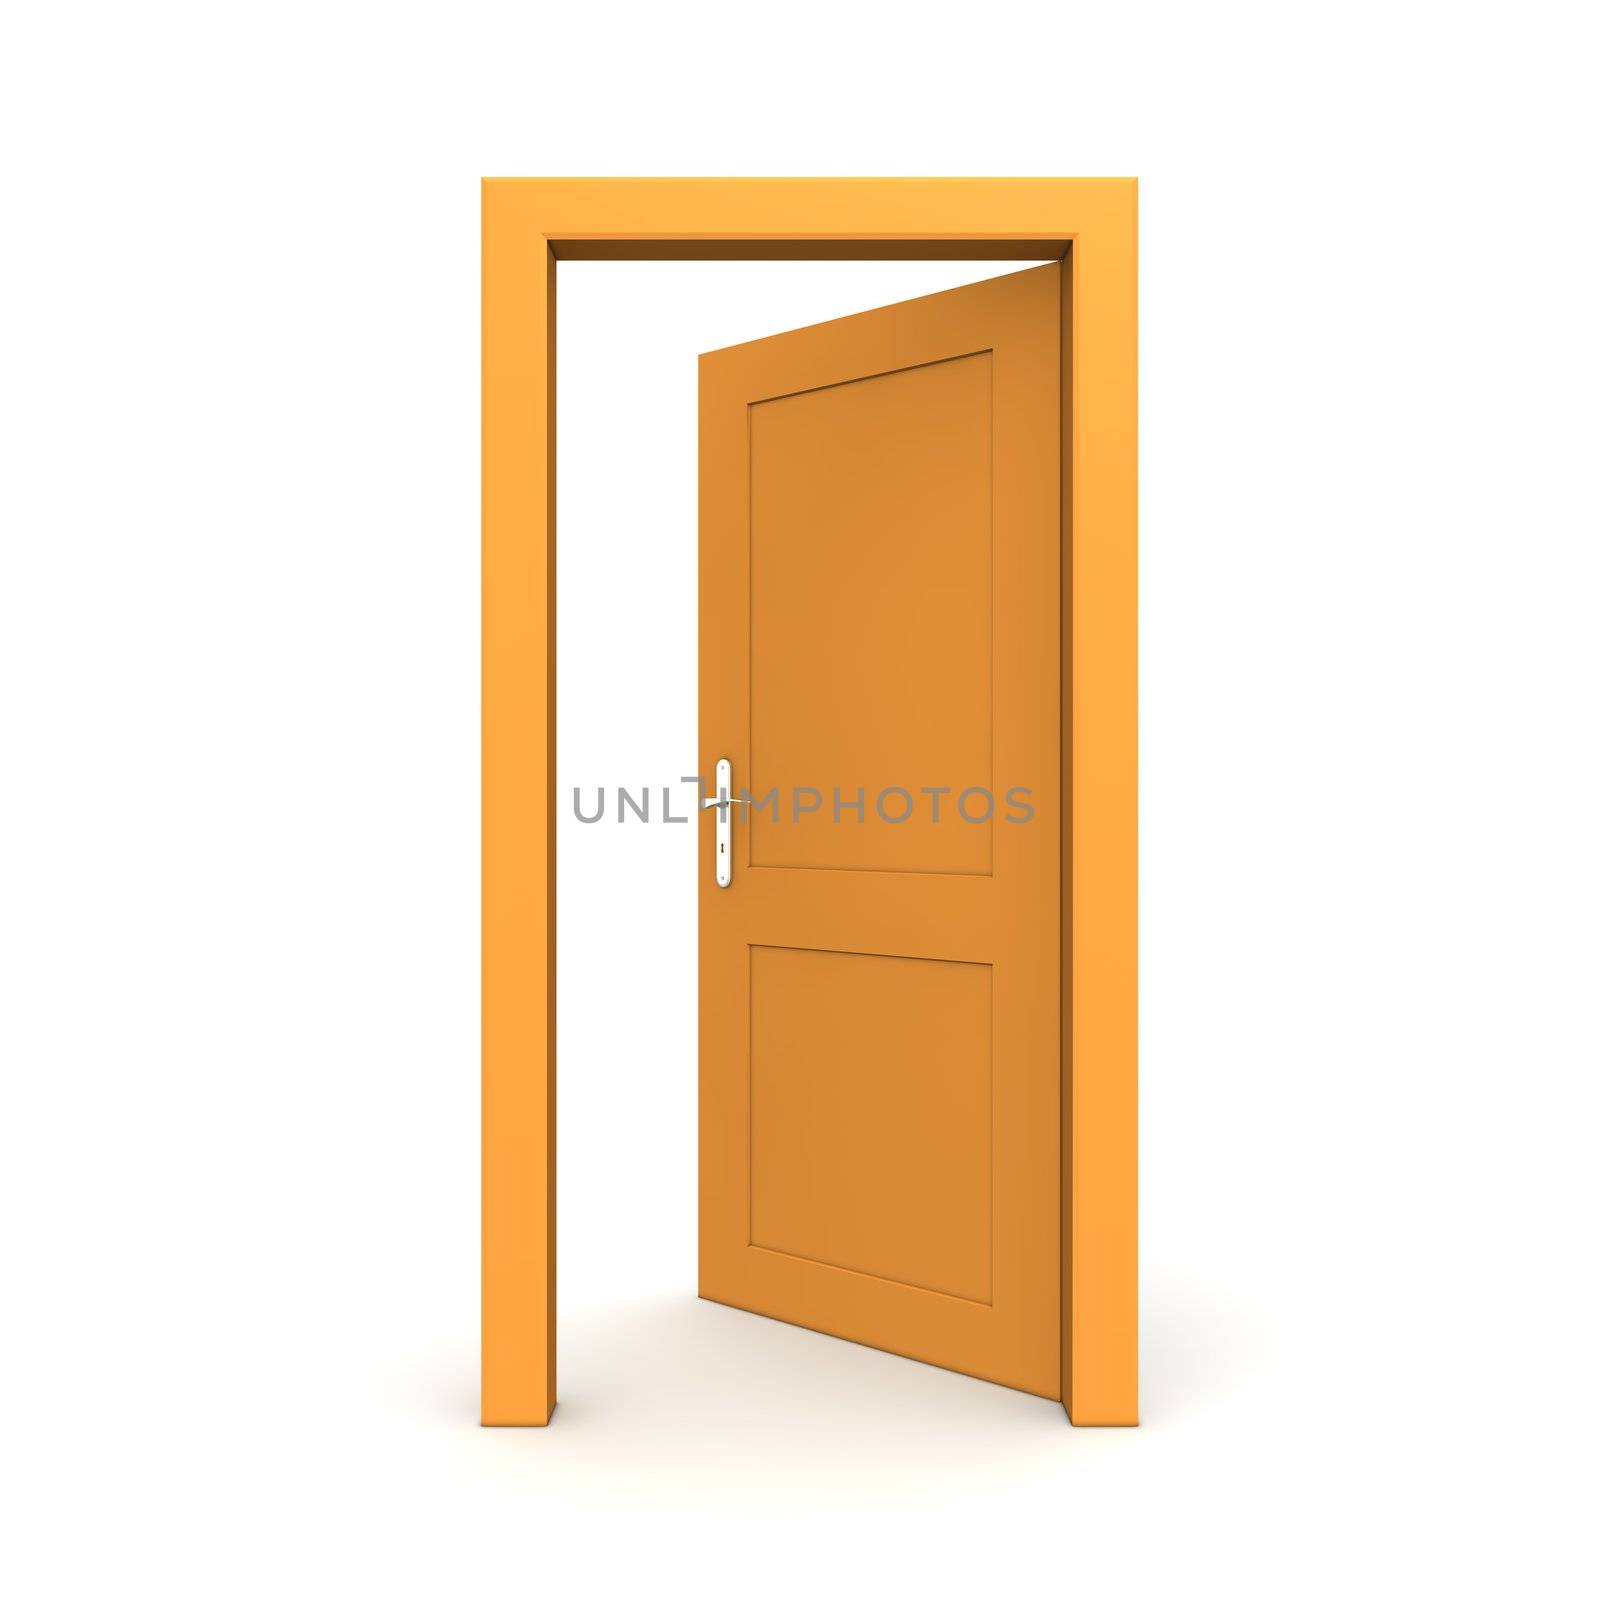 single orange door open - door frame only, no walls